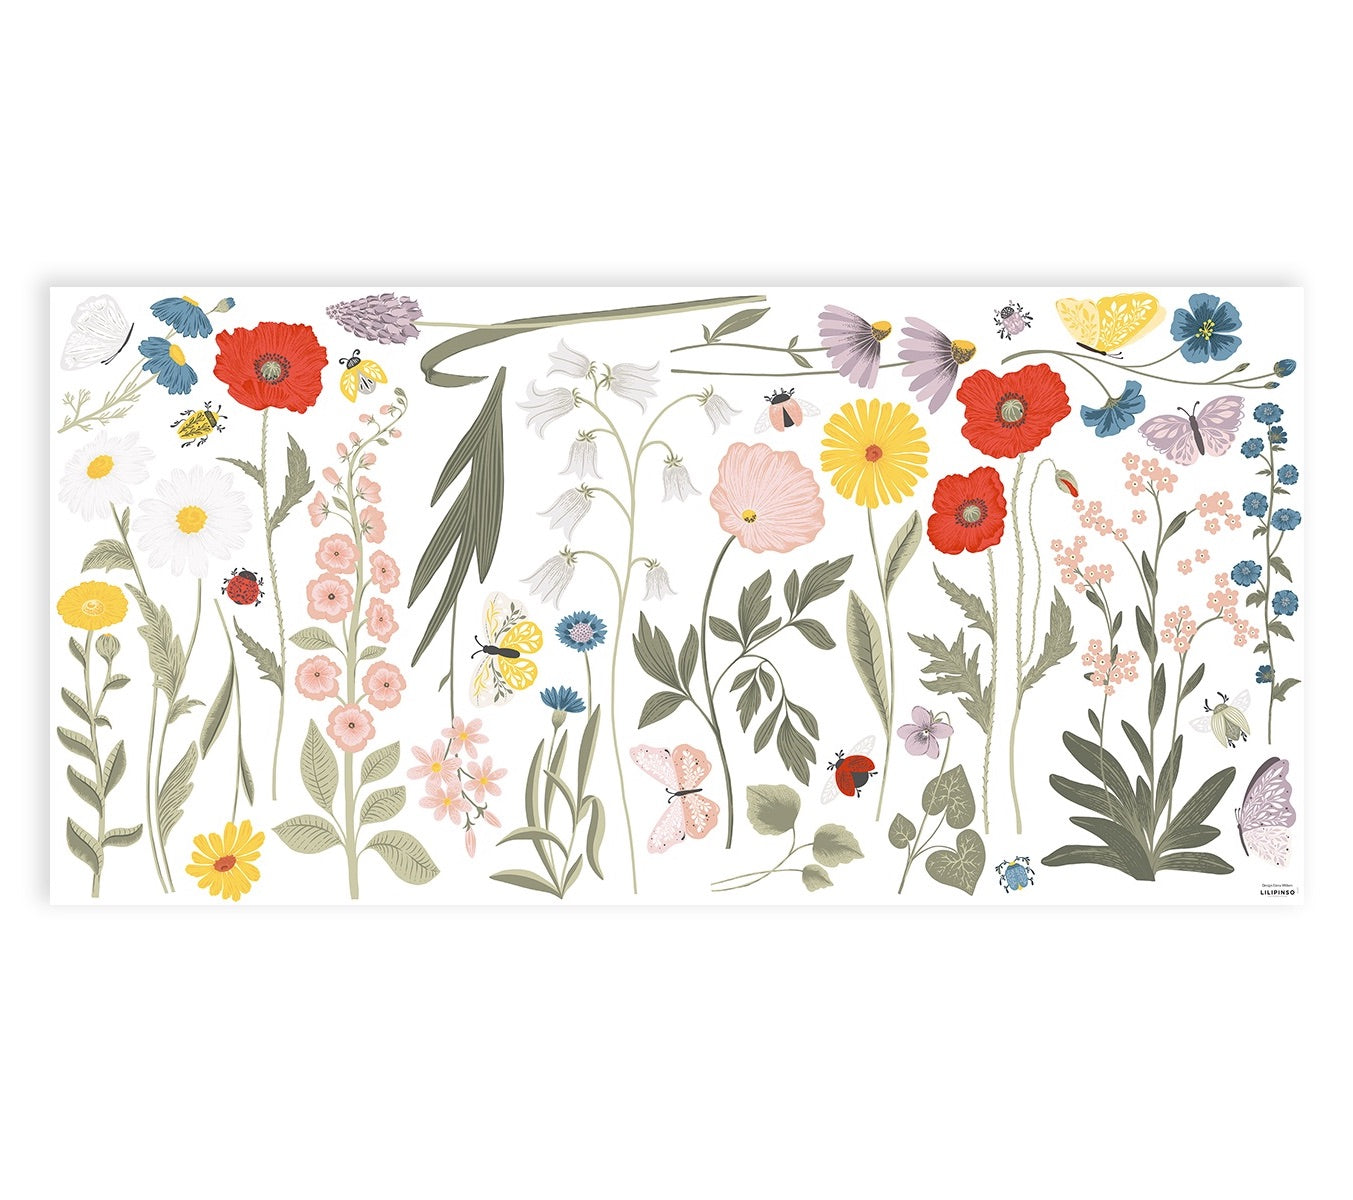 Stickers fleurs sauvages en Vinyle mat Multicolore 64x130 cm